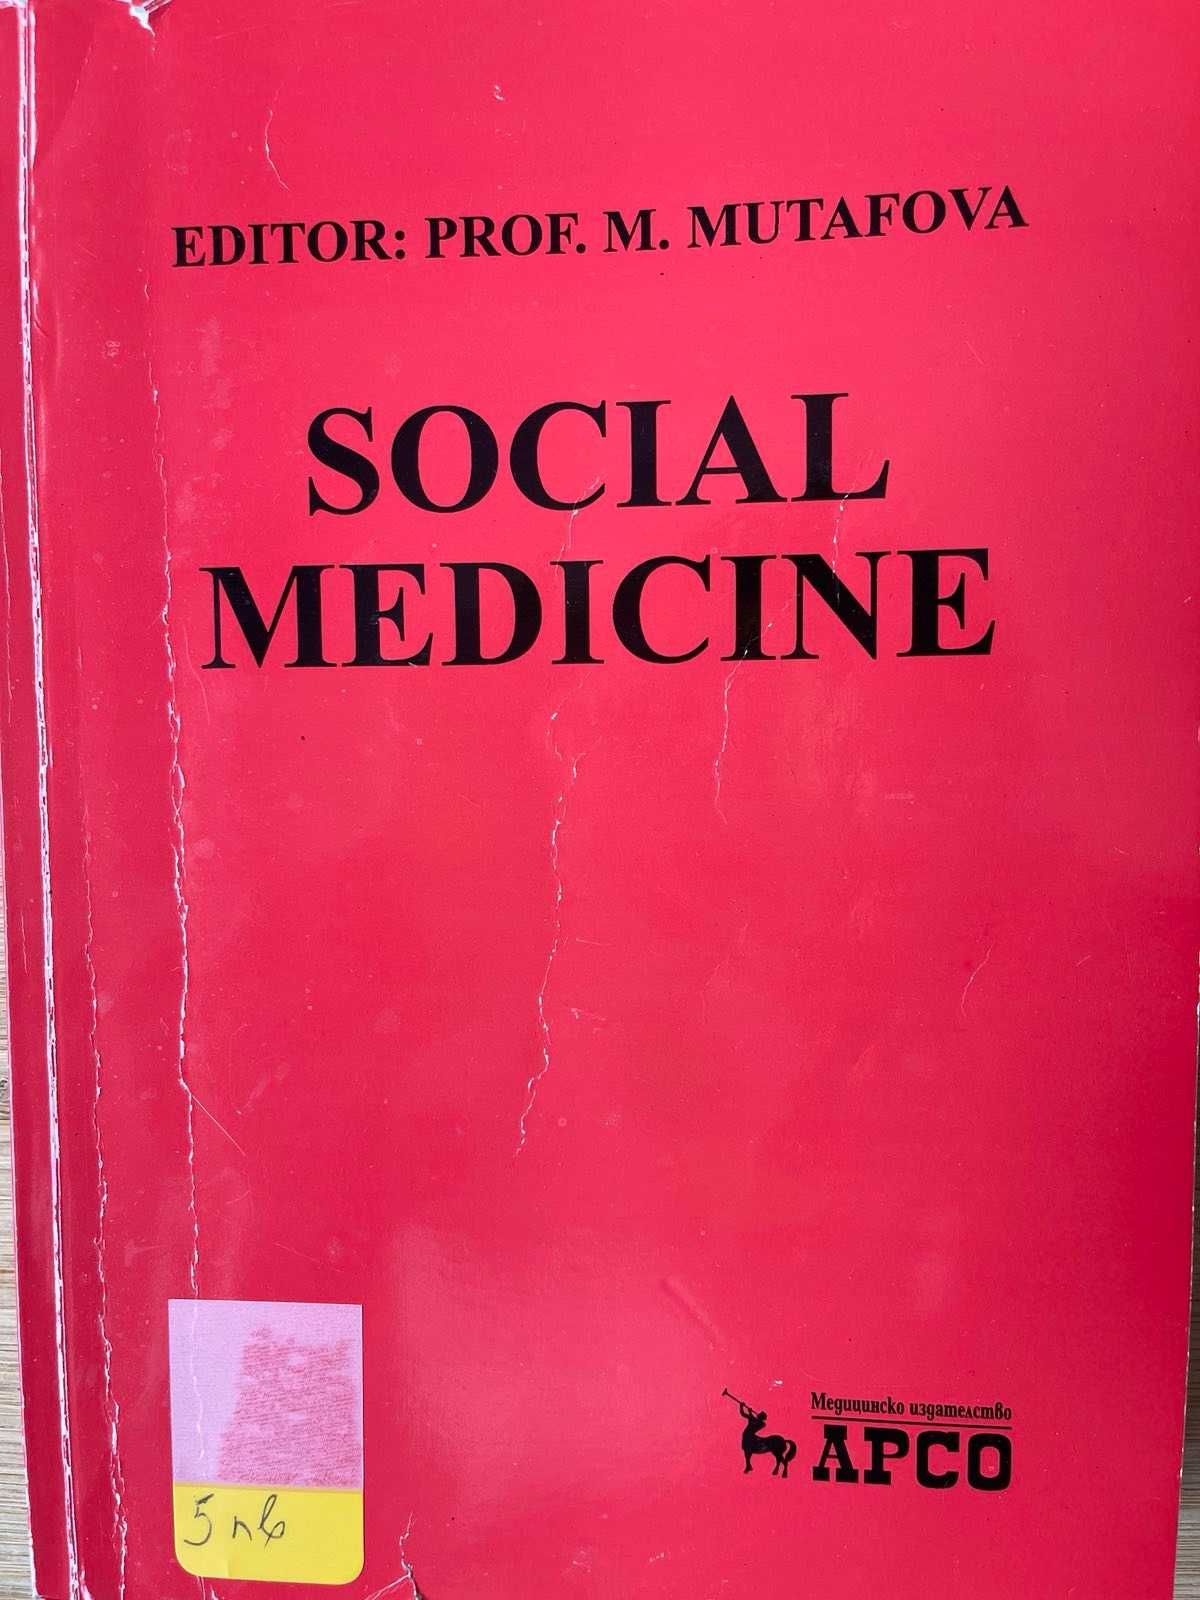 Учебници по медицина на английски език.Medical textbooks in English